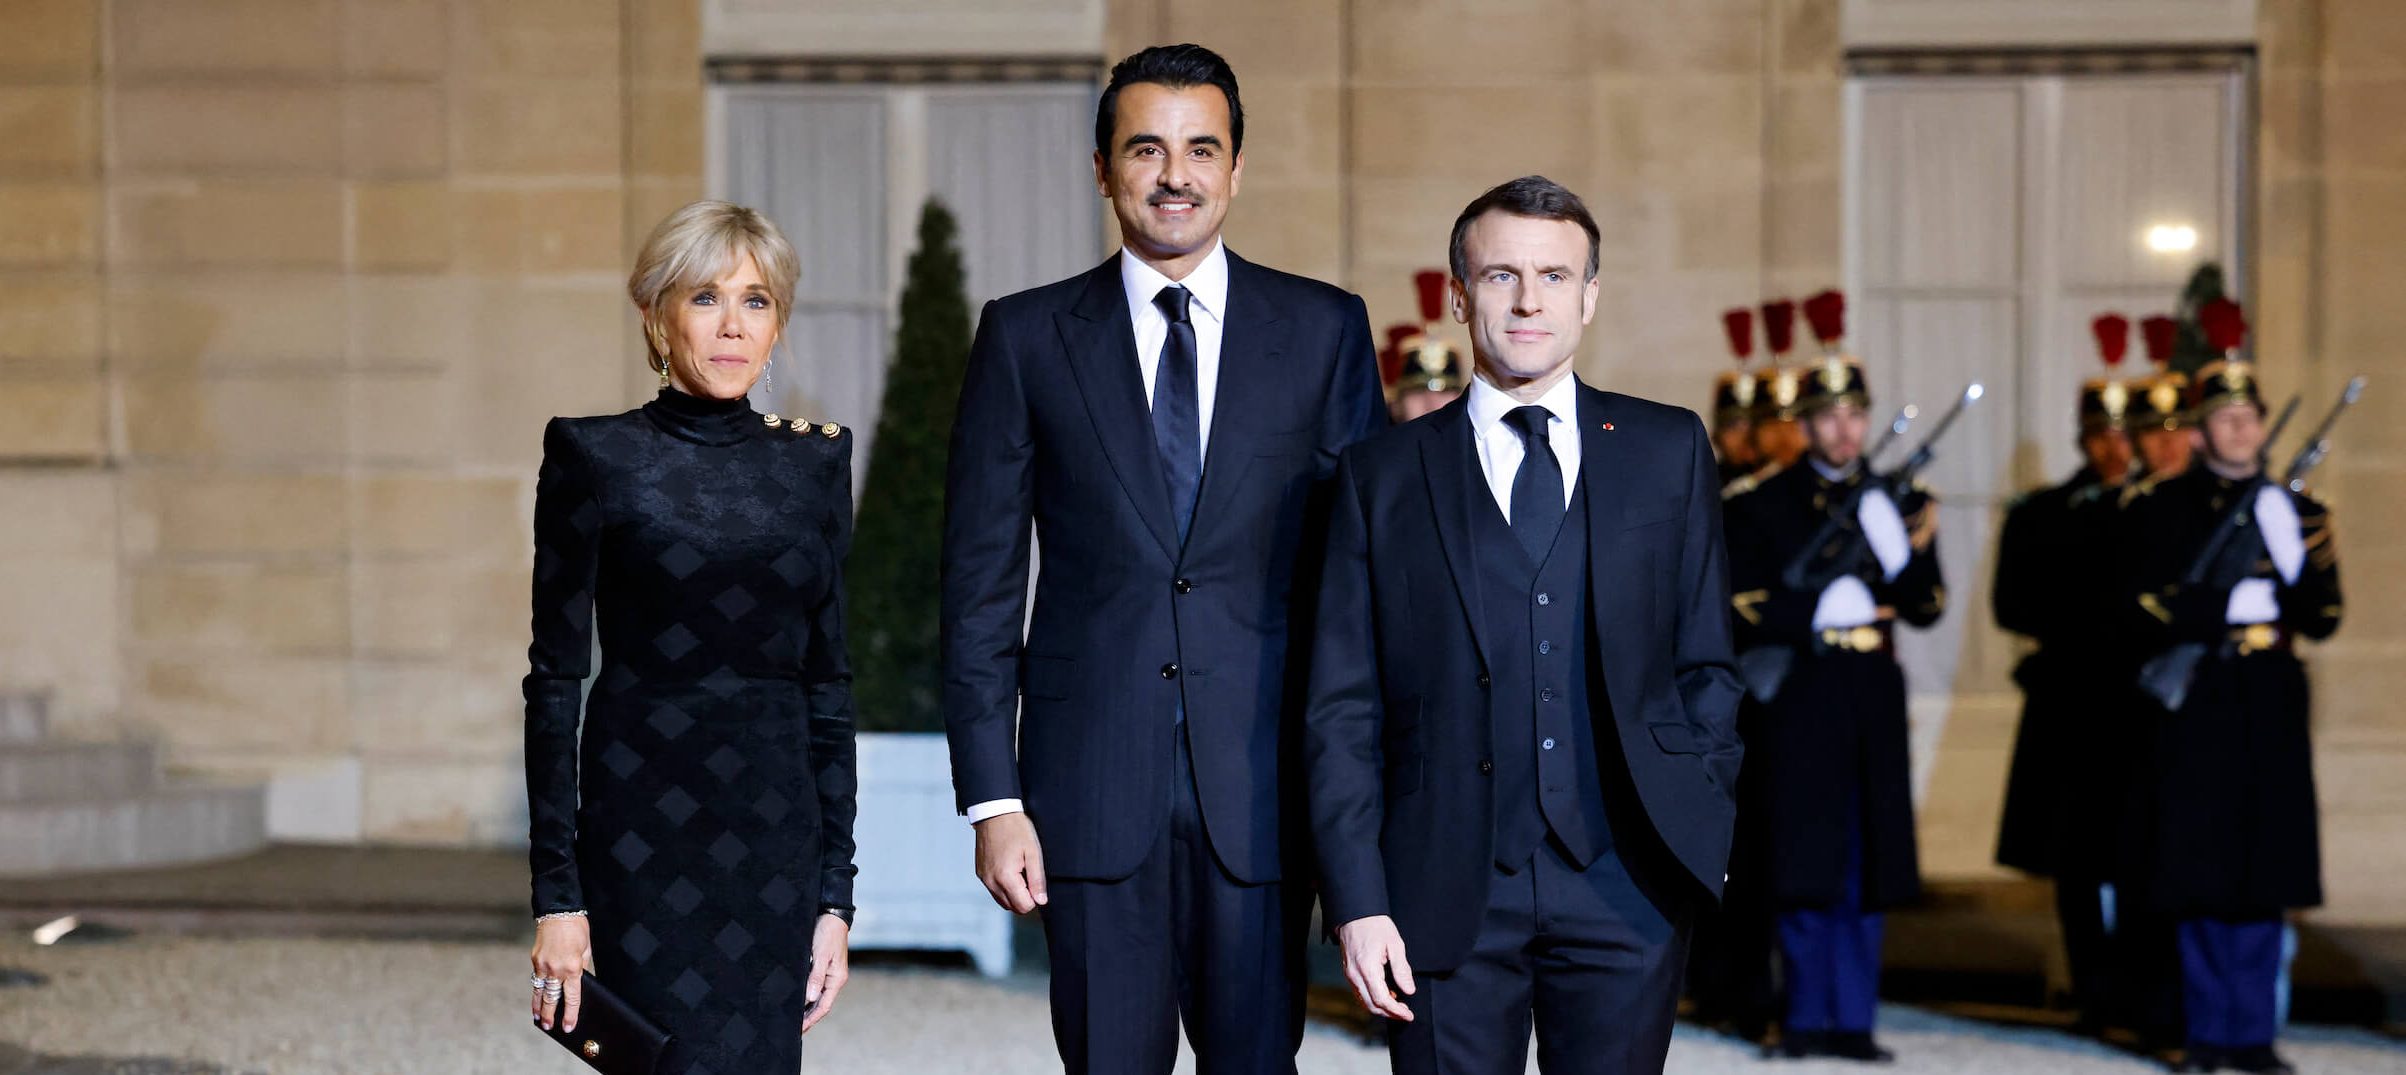 L'émir du Qatar Tamim ben Hamad Al-Thani reçu par les Macron à l'Élysée lors de sa première visite d'État en France.